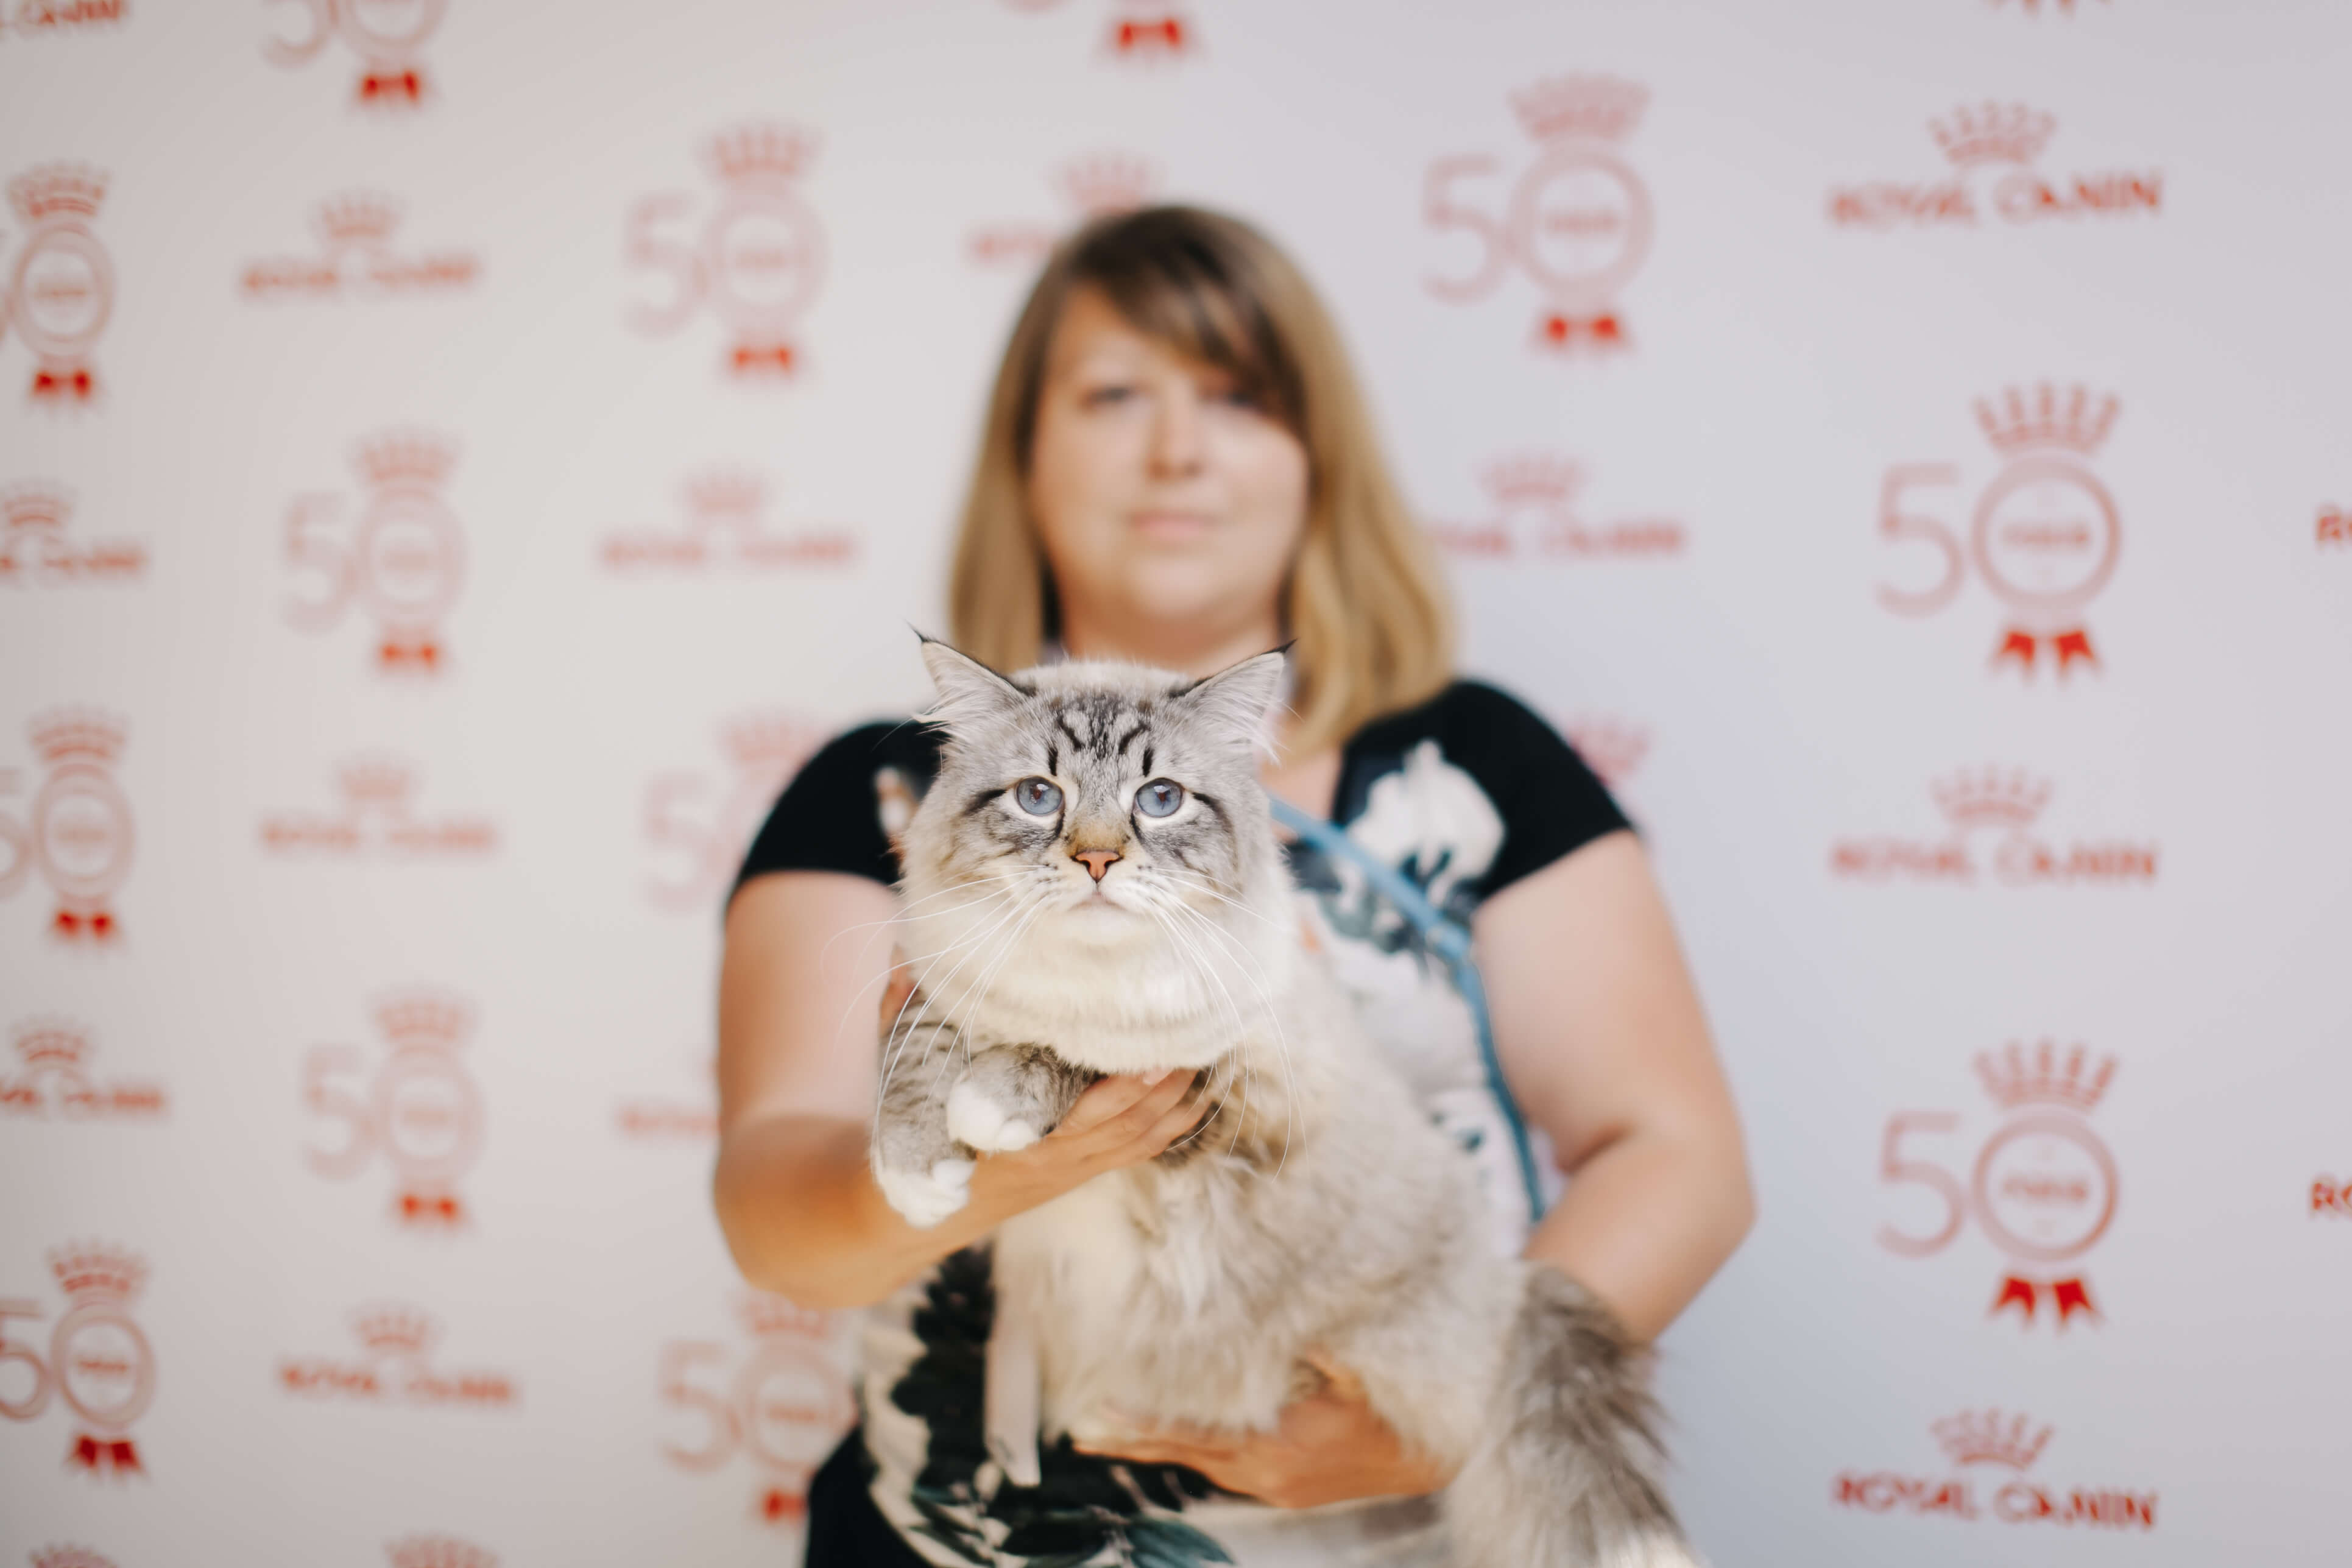 Royal Canin Cup 2018: как прошла выставка кошек в Одессе-320x180